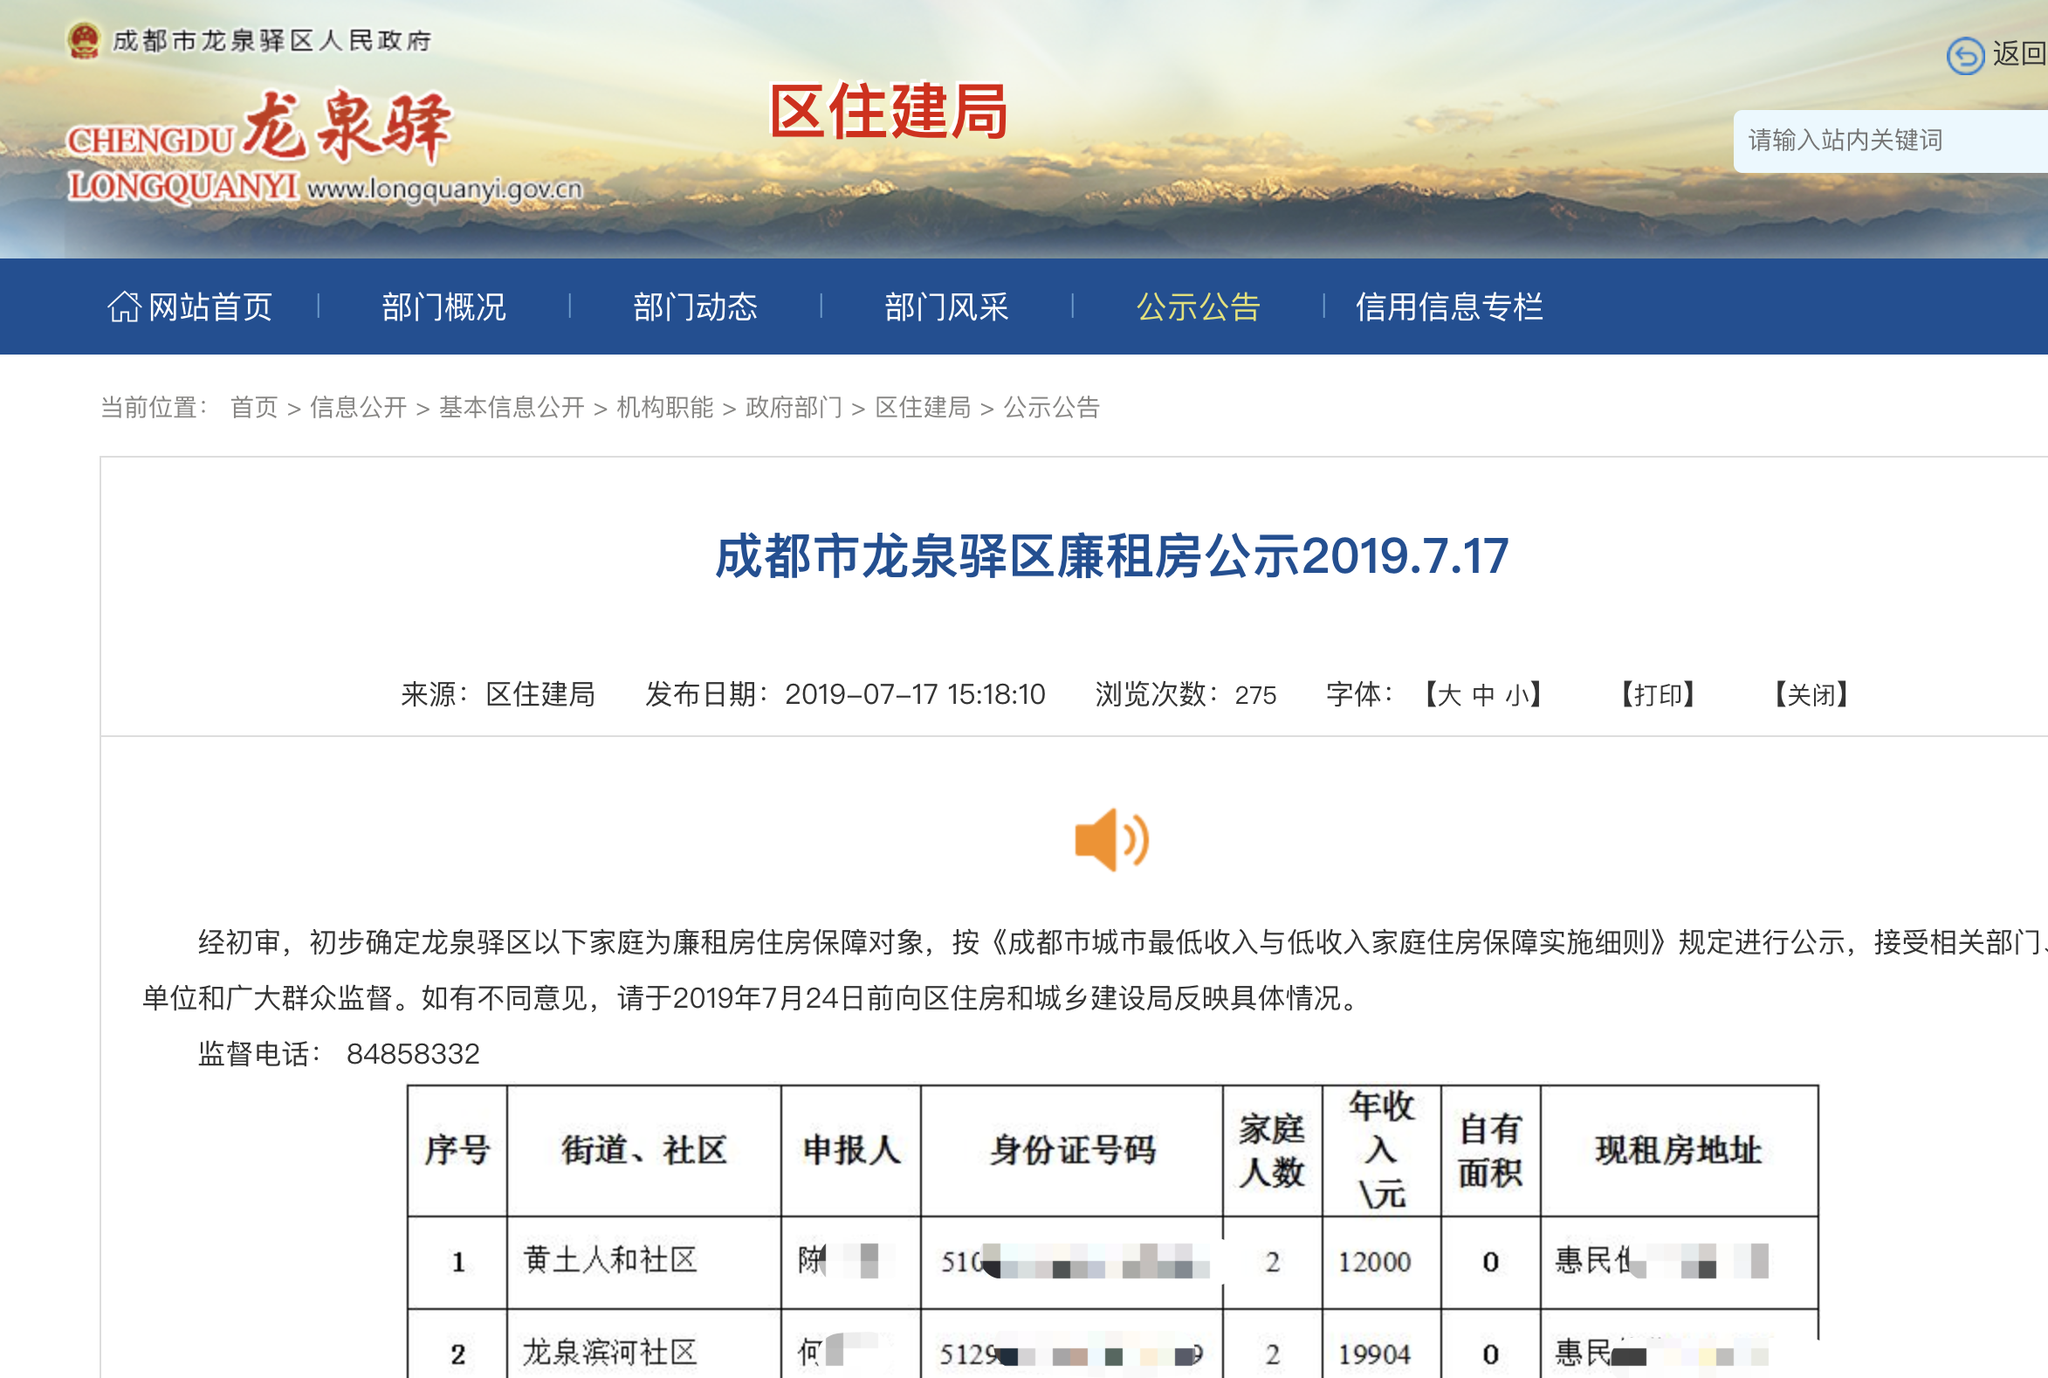 成都市龙泉驿区政府官网上公布的廉租房保障对象身份证号等信息。  截屏图